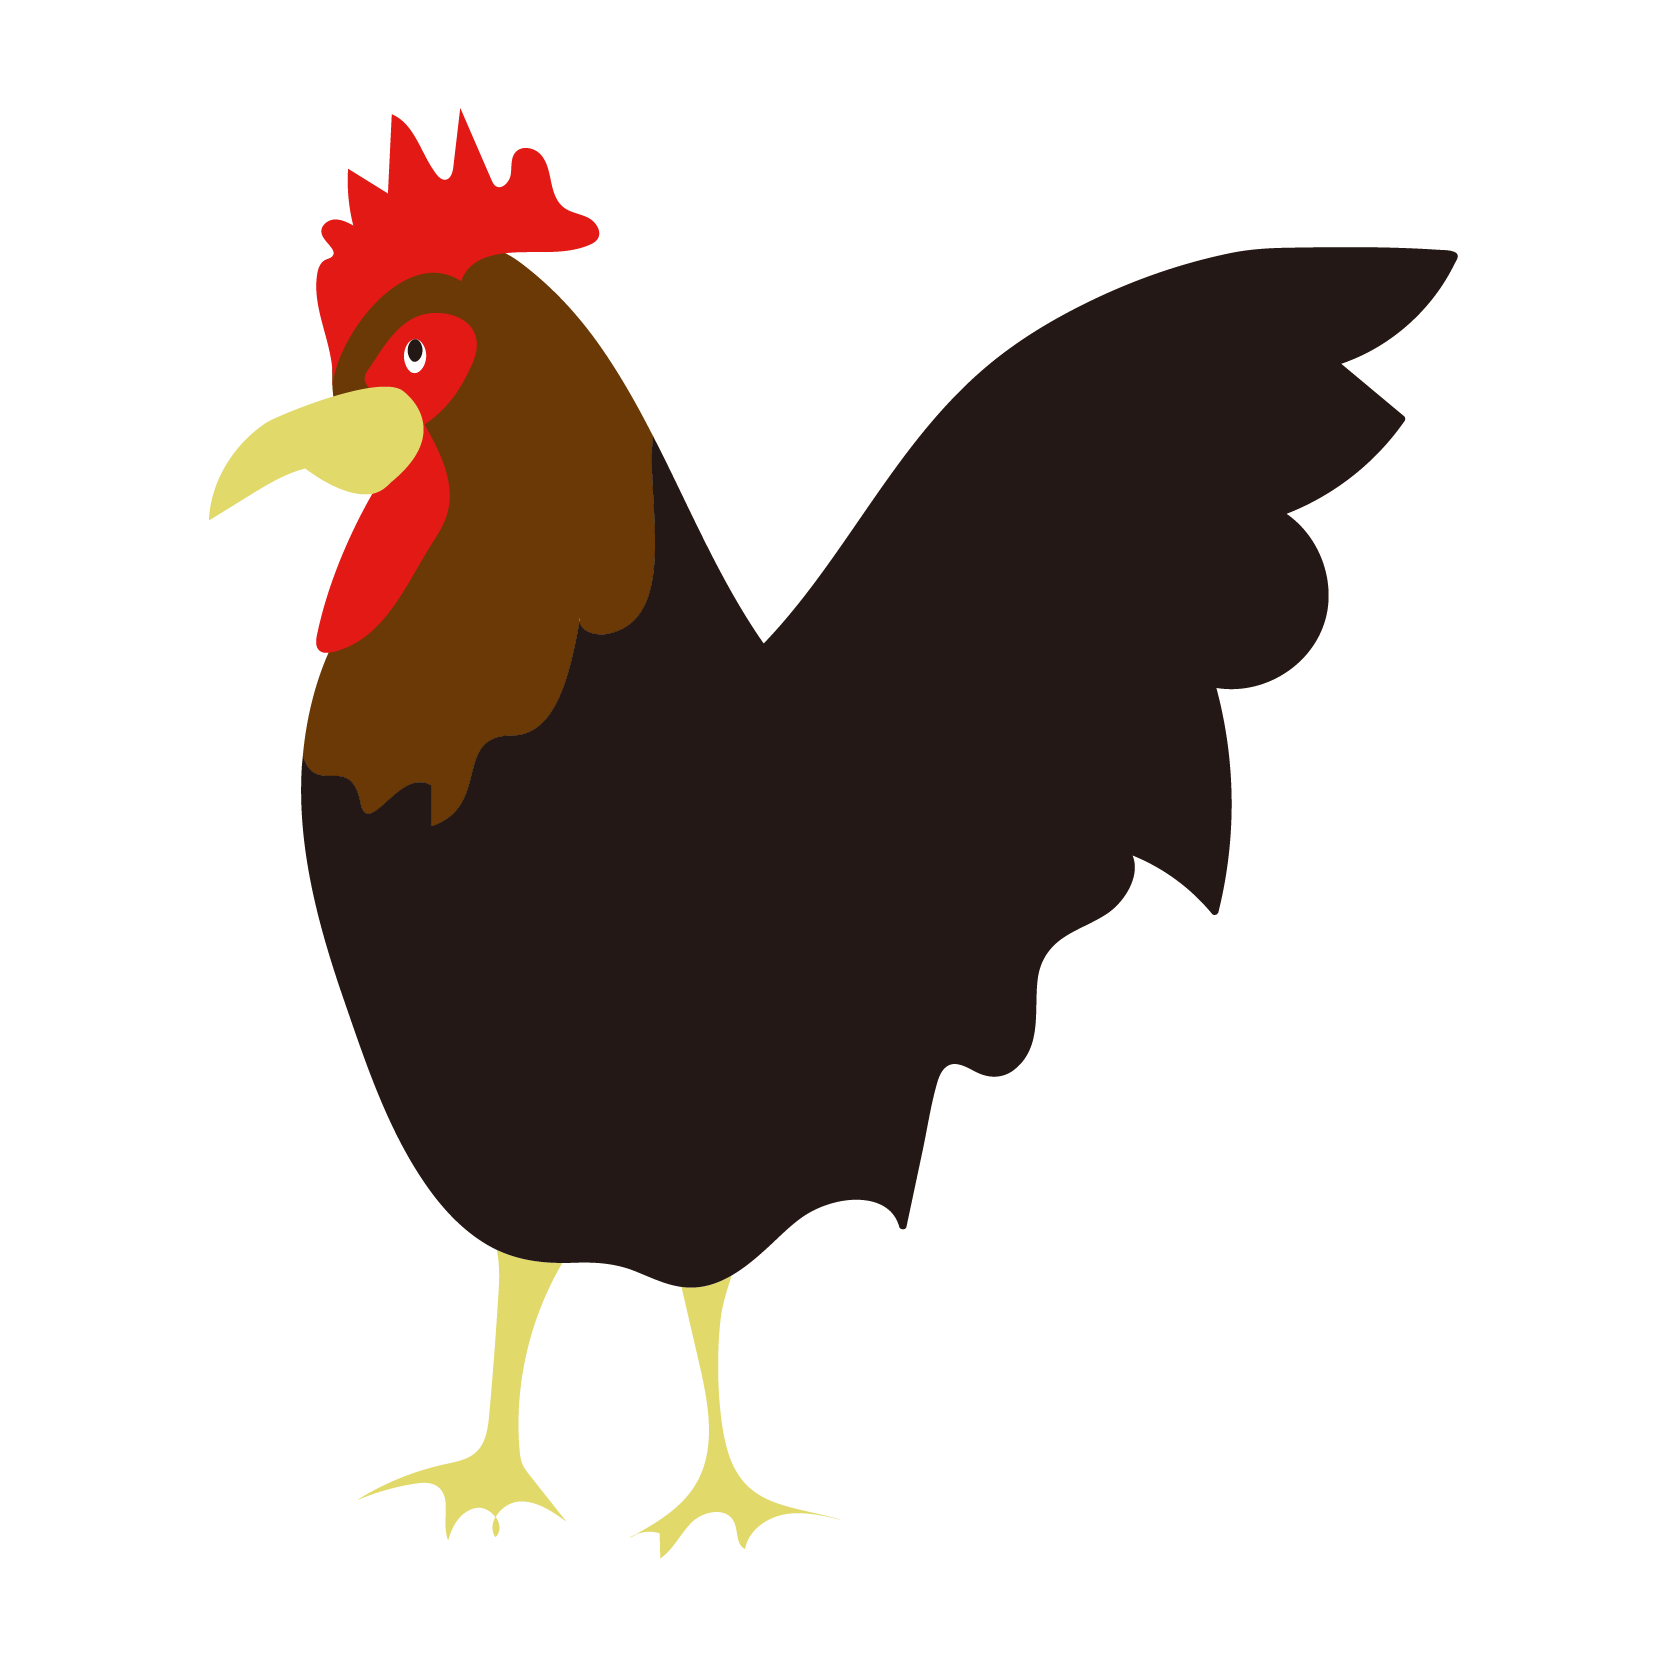 茶色の鶏鳥 にわとり 年賀状ワンポイントイラスト 酉年 とりどし 商用フリー 無料 のイラスト素材なら イラストマンション